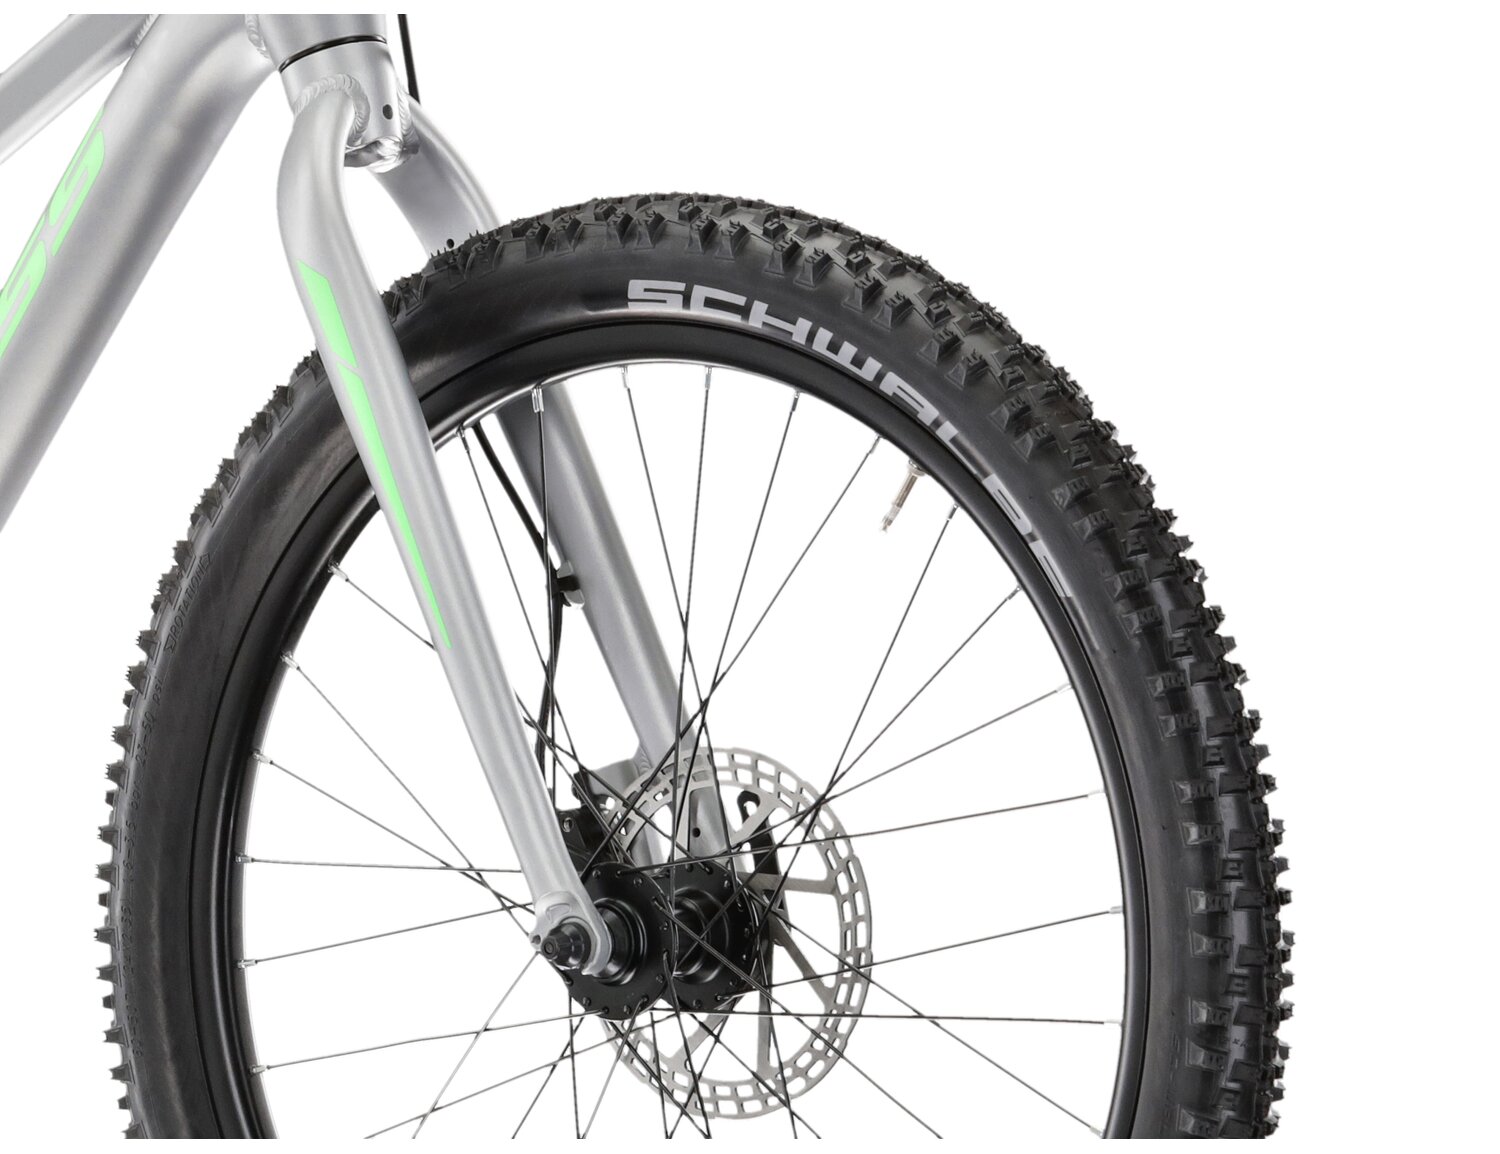  Aluminowa rama, sztywny aluminiowy widelec oraz opony o szerokości 2,35 cala w rowerze juniorskim KROSS Level JR 3.0 